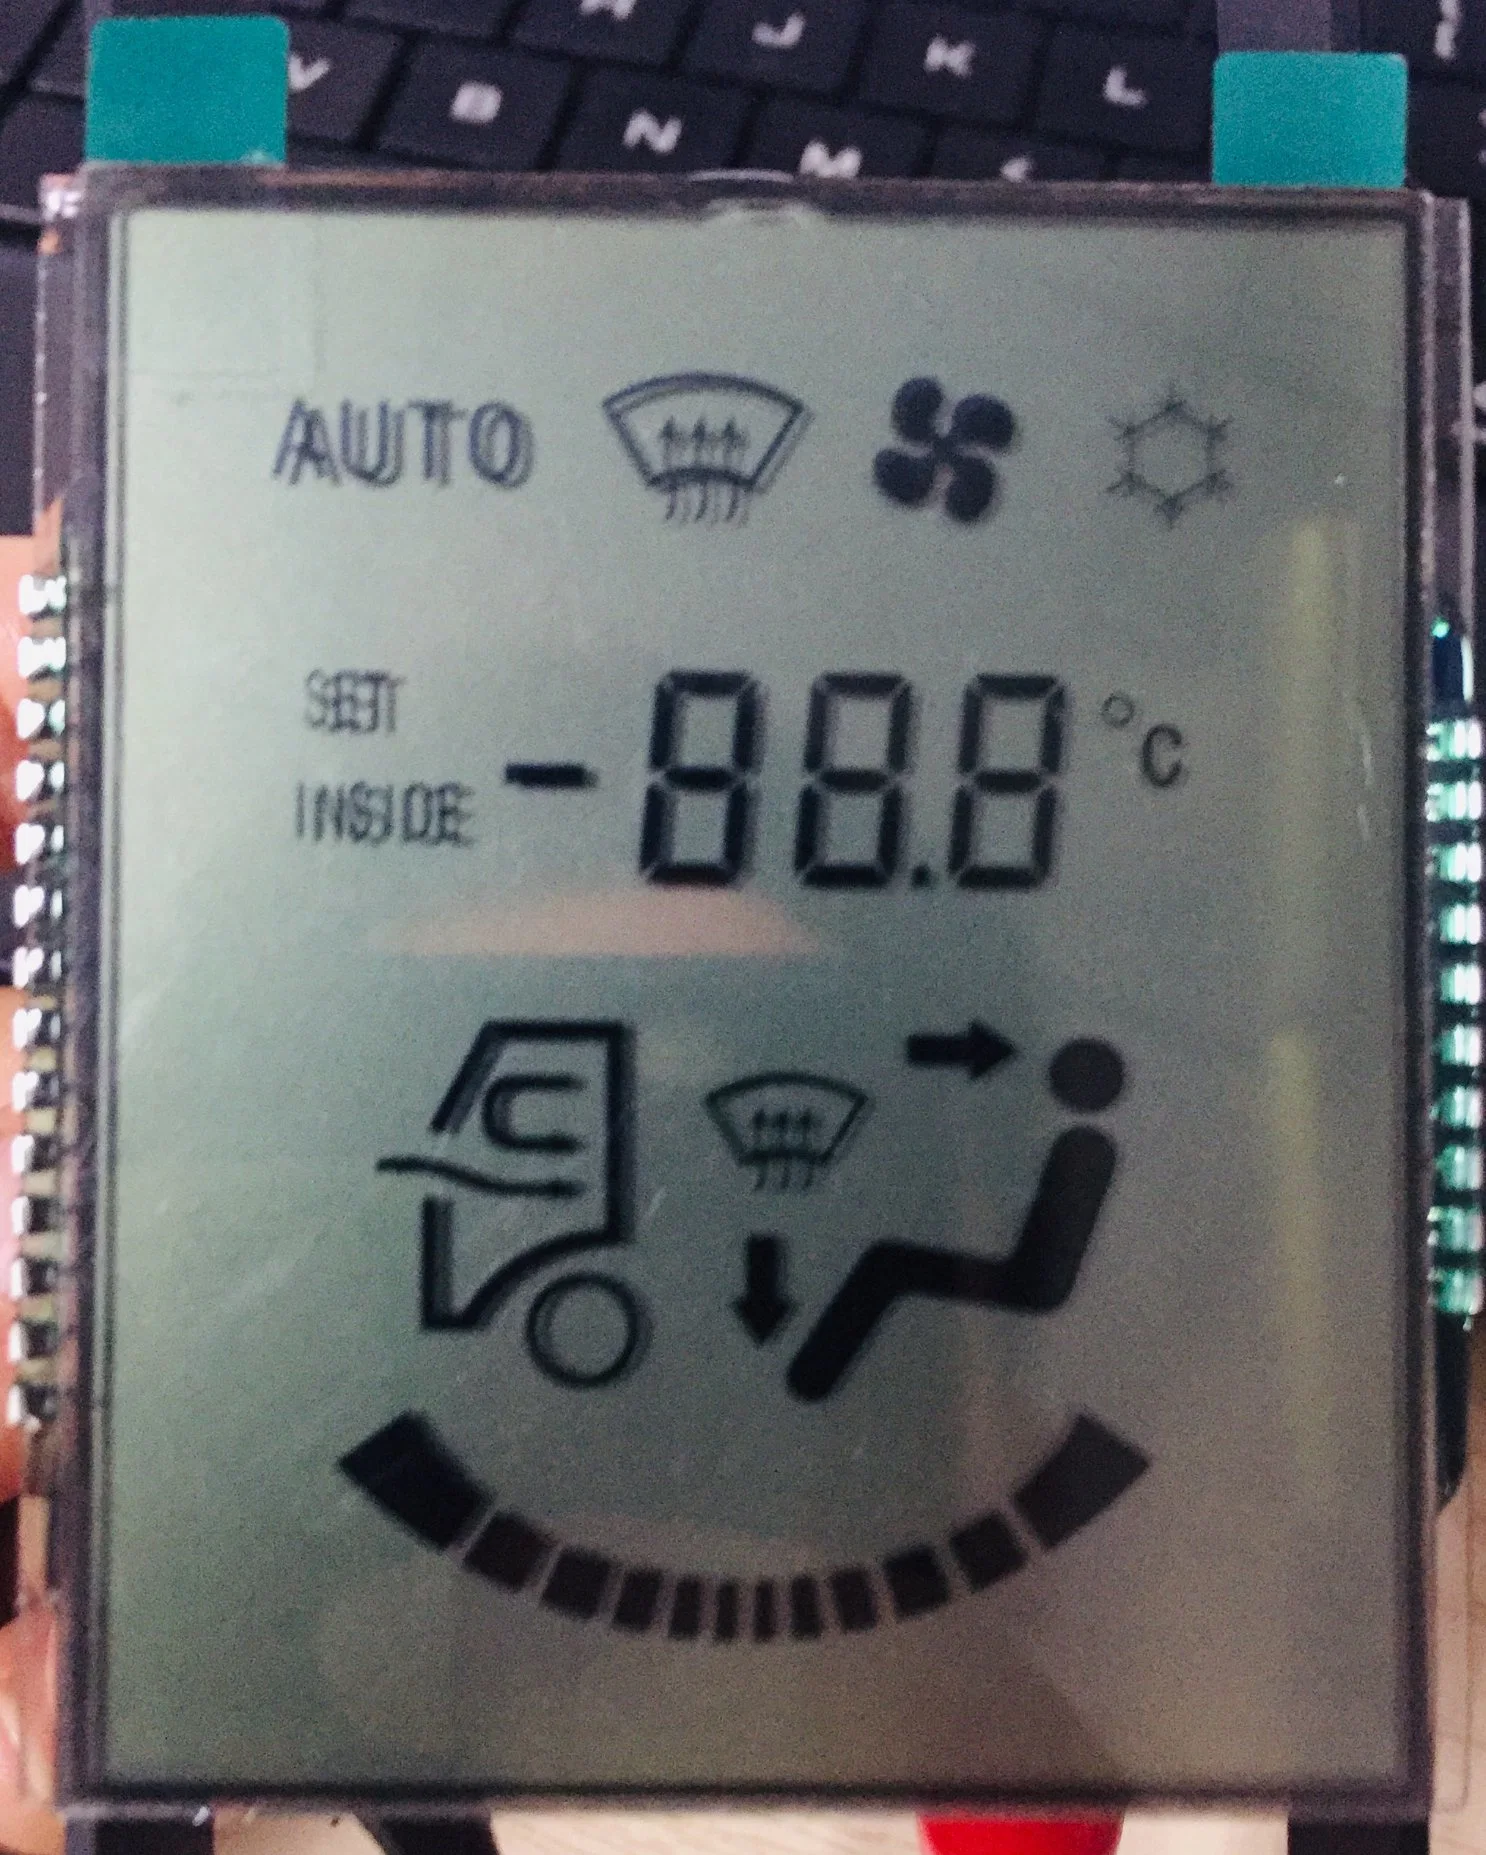 شاشة عرض LCD ذات 7 مقاطع لنظام تكييف الهواء في السيارة